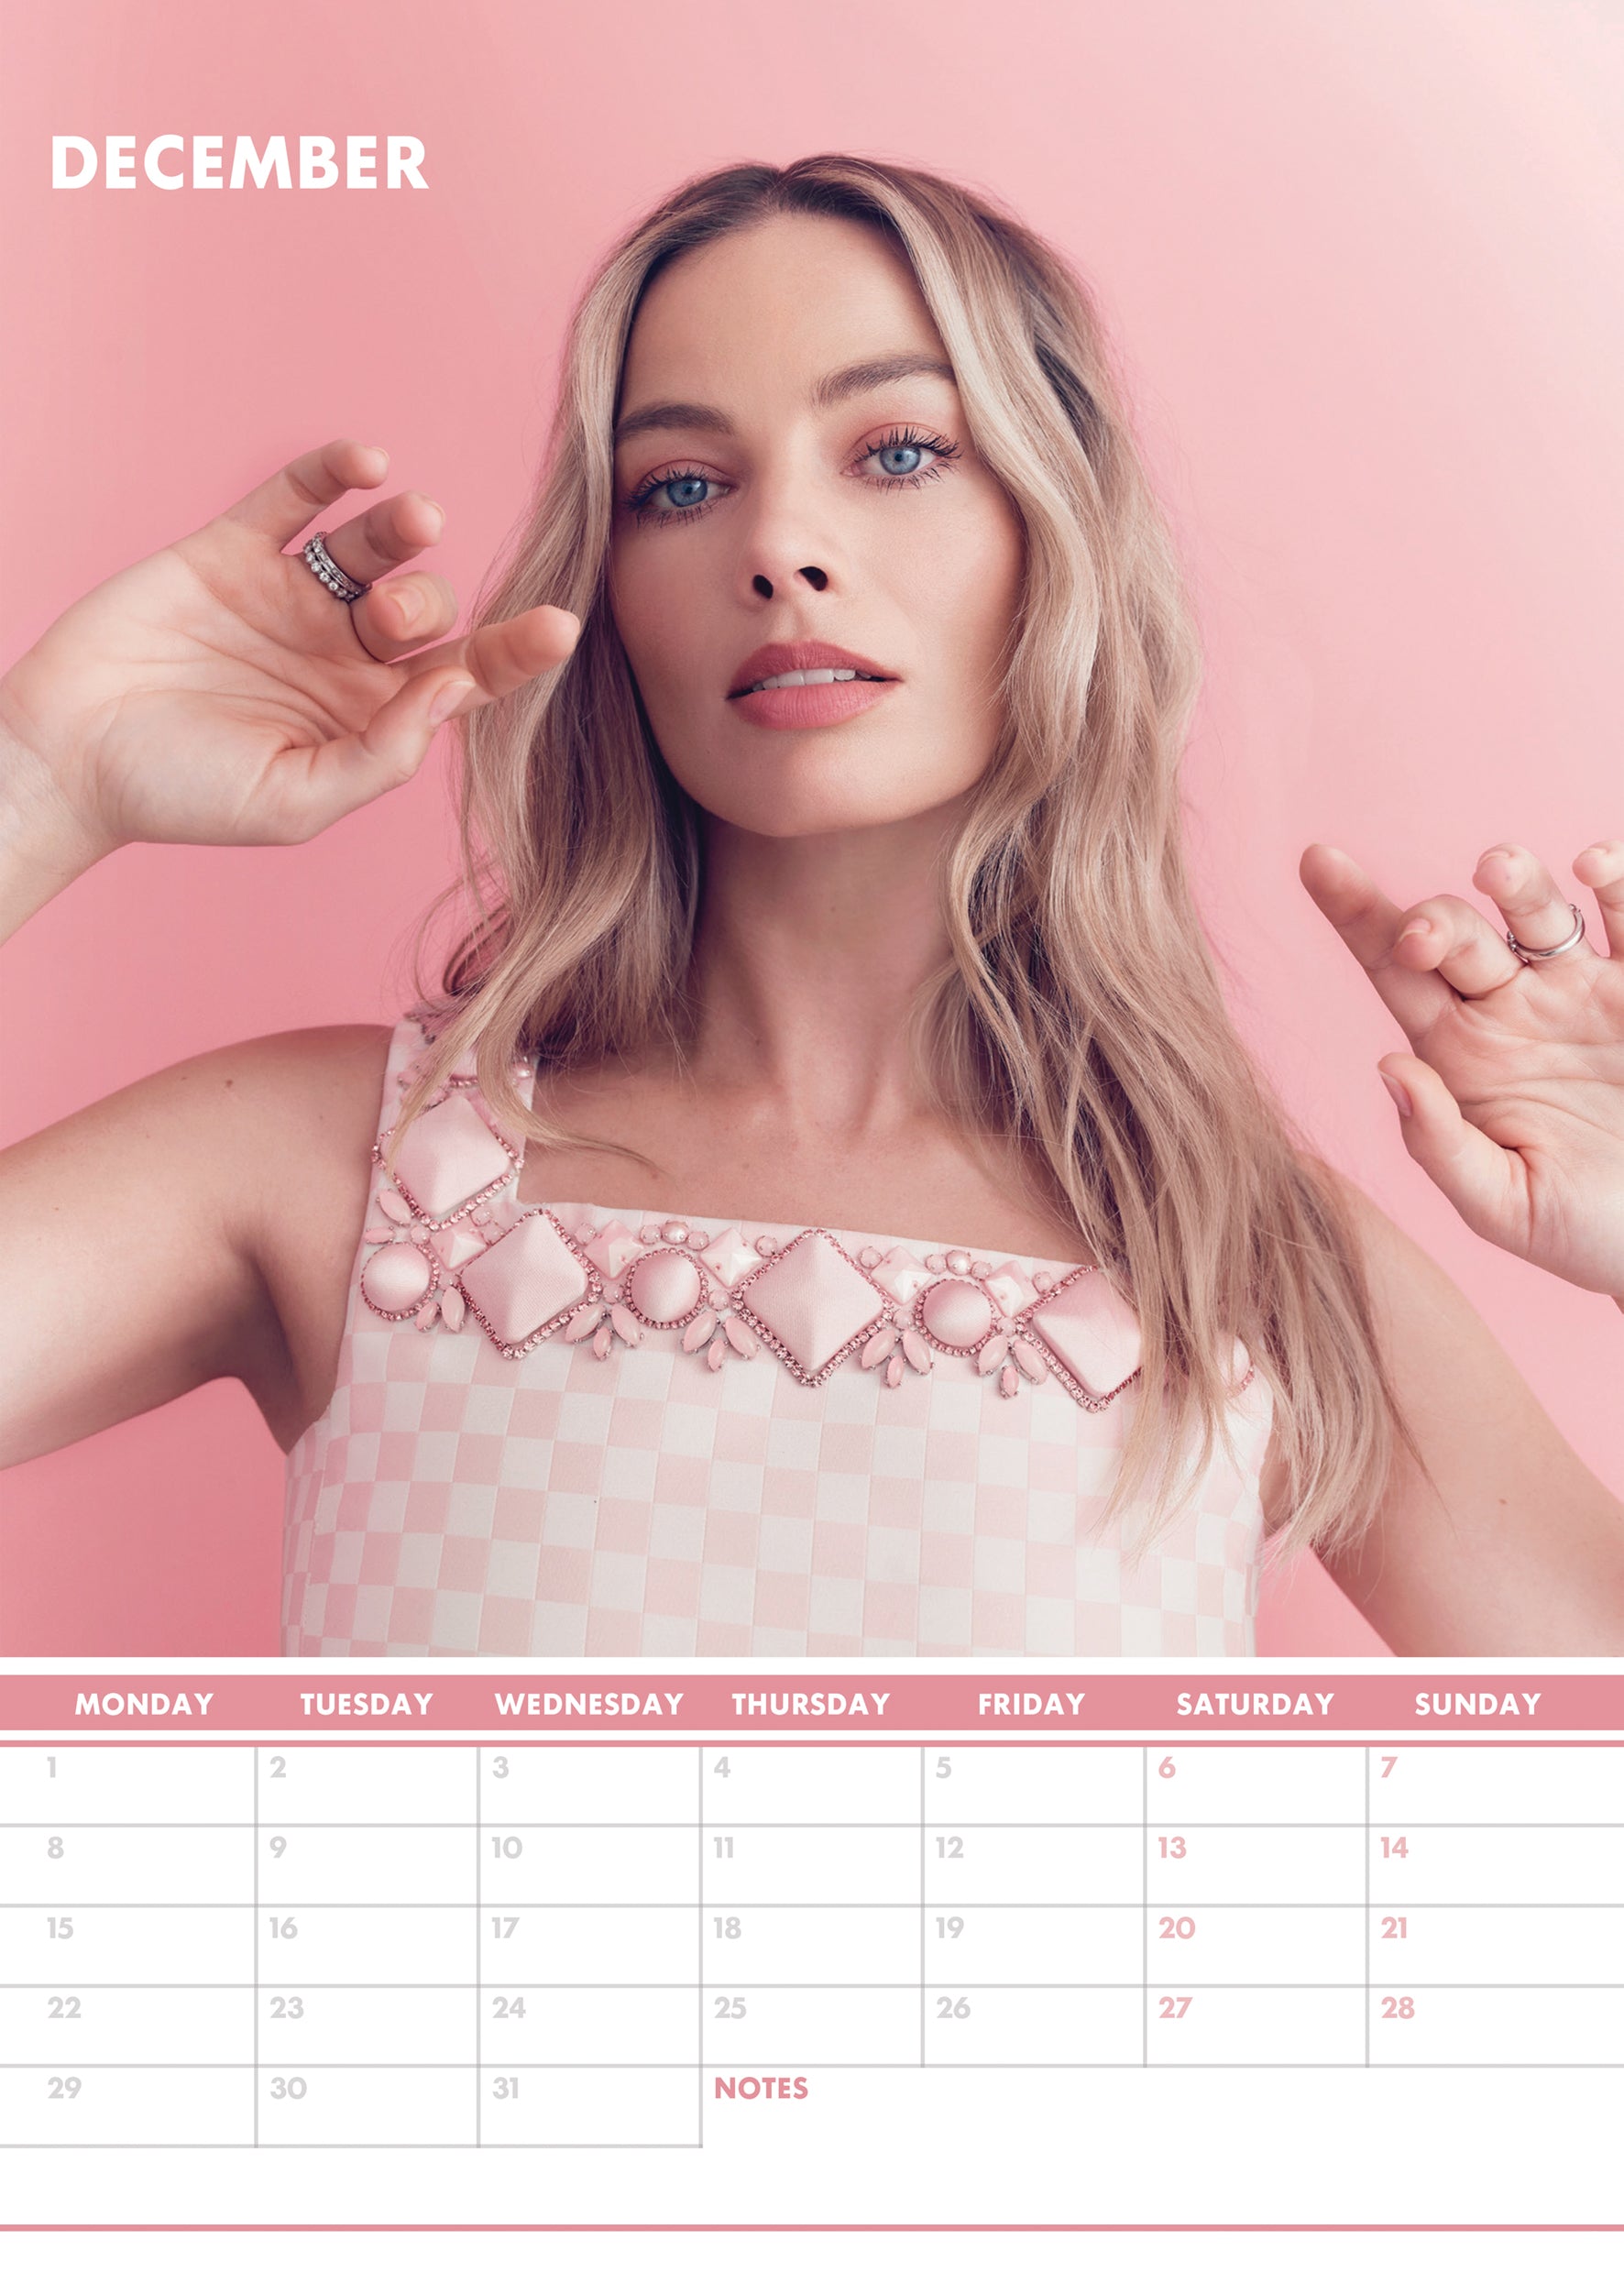 2025 Margot Robbie - A3 Wall Calendar